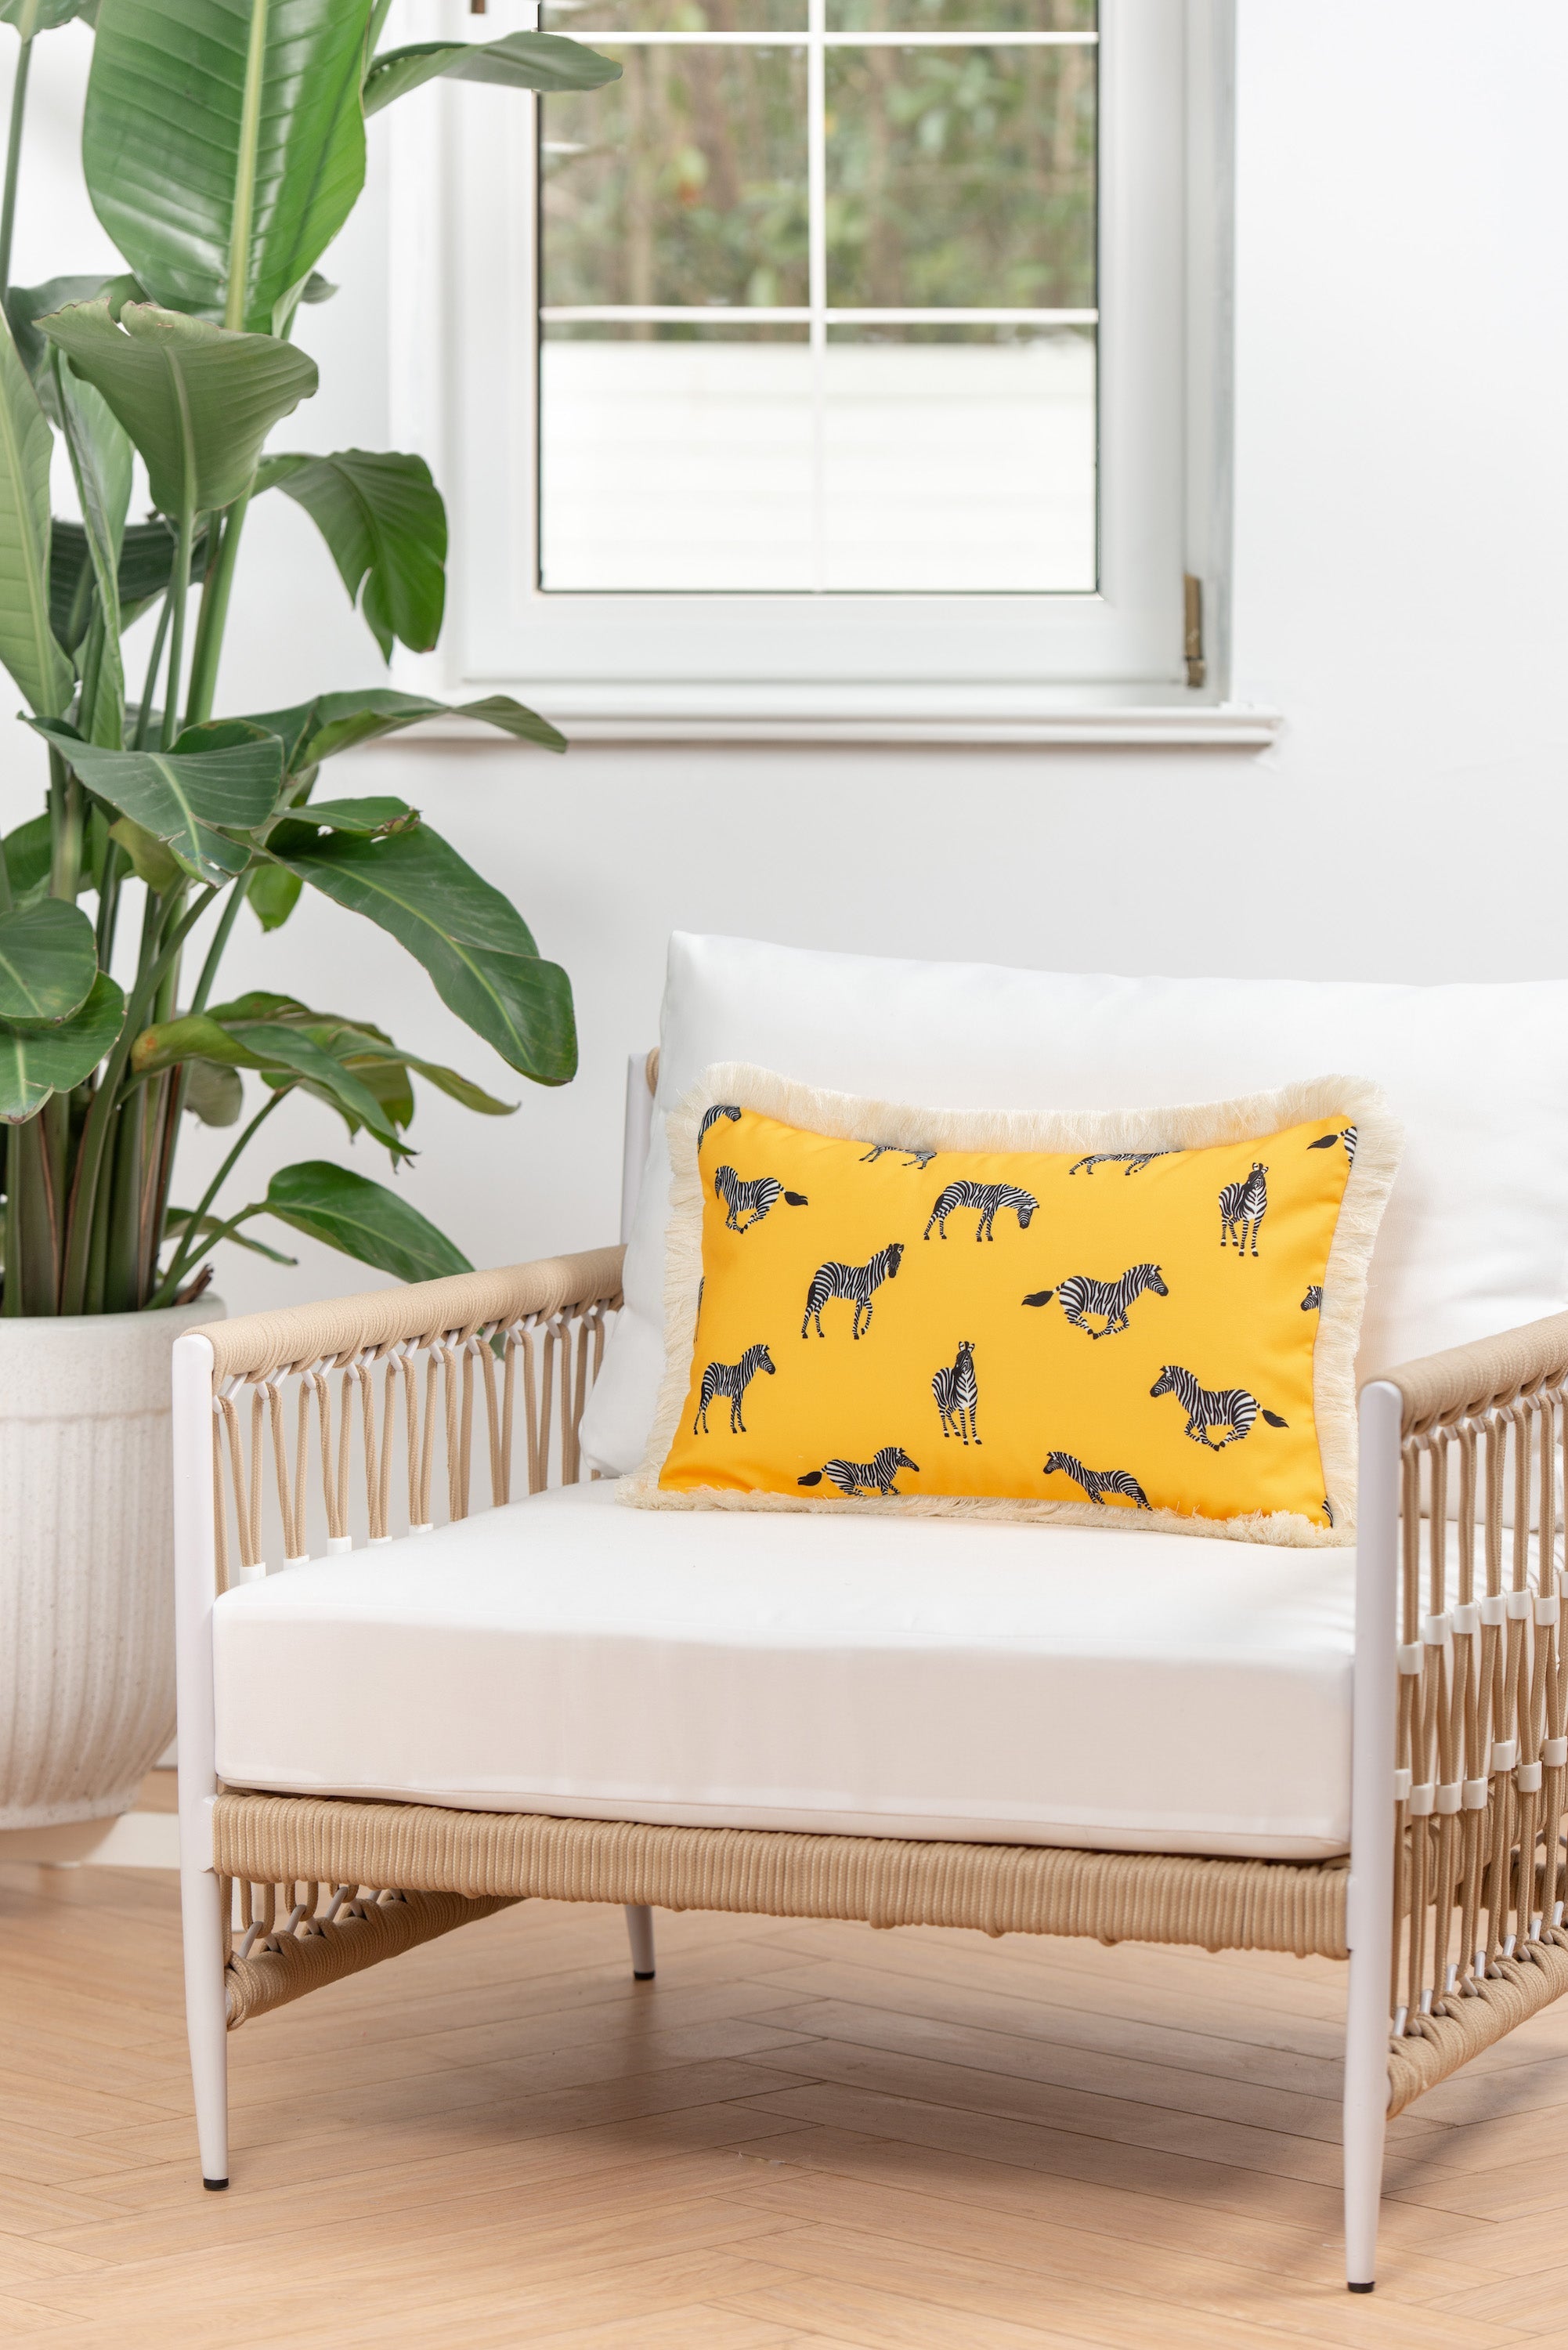 Tropical Indoor Outdoor Lumbar Pillow Cover, Zebra Fringe, Yellow, 12"x20"